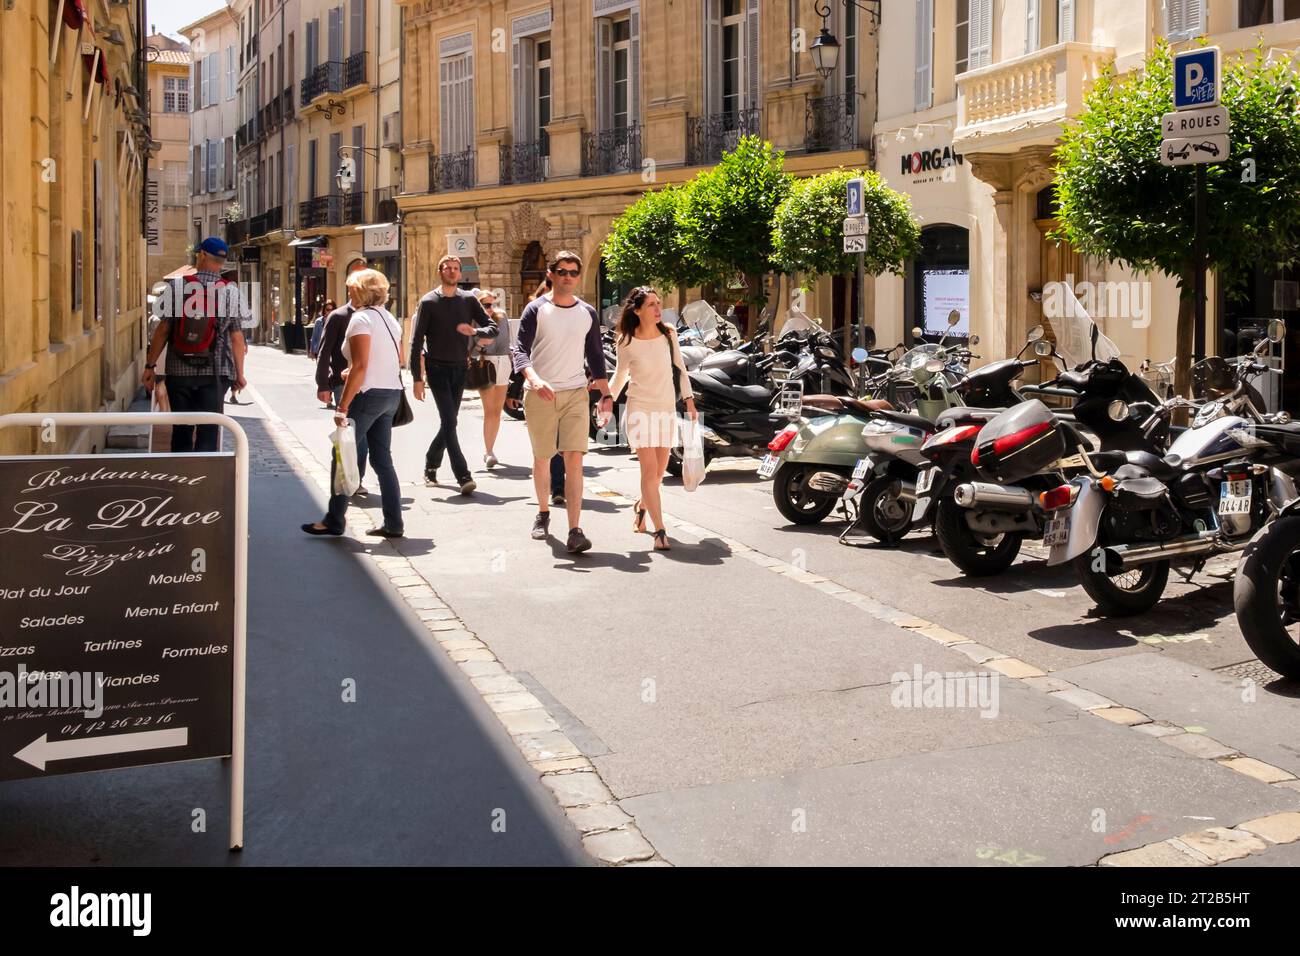 Personnes marchant le long d'une rue de la vieille ville, Aix-en-Provence, sud de la France. Banque D'Images